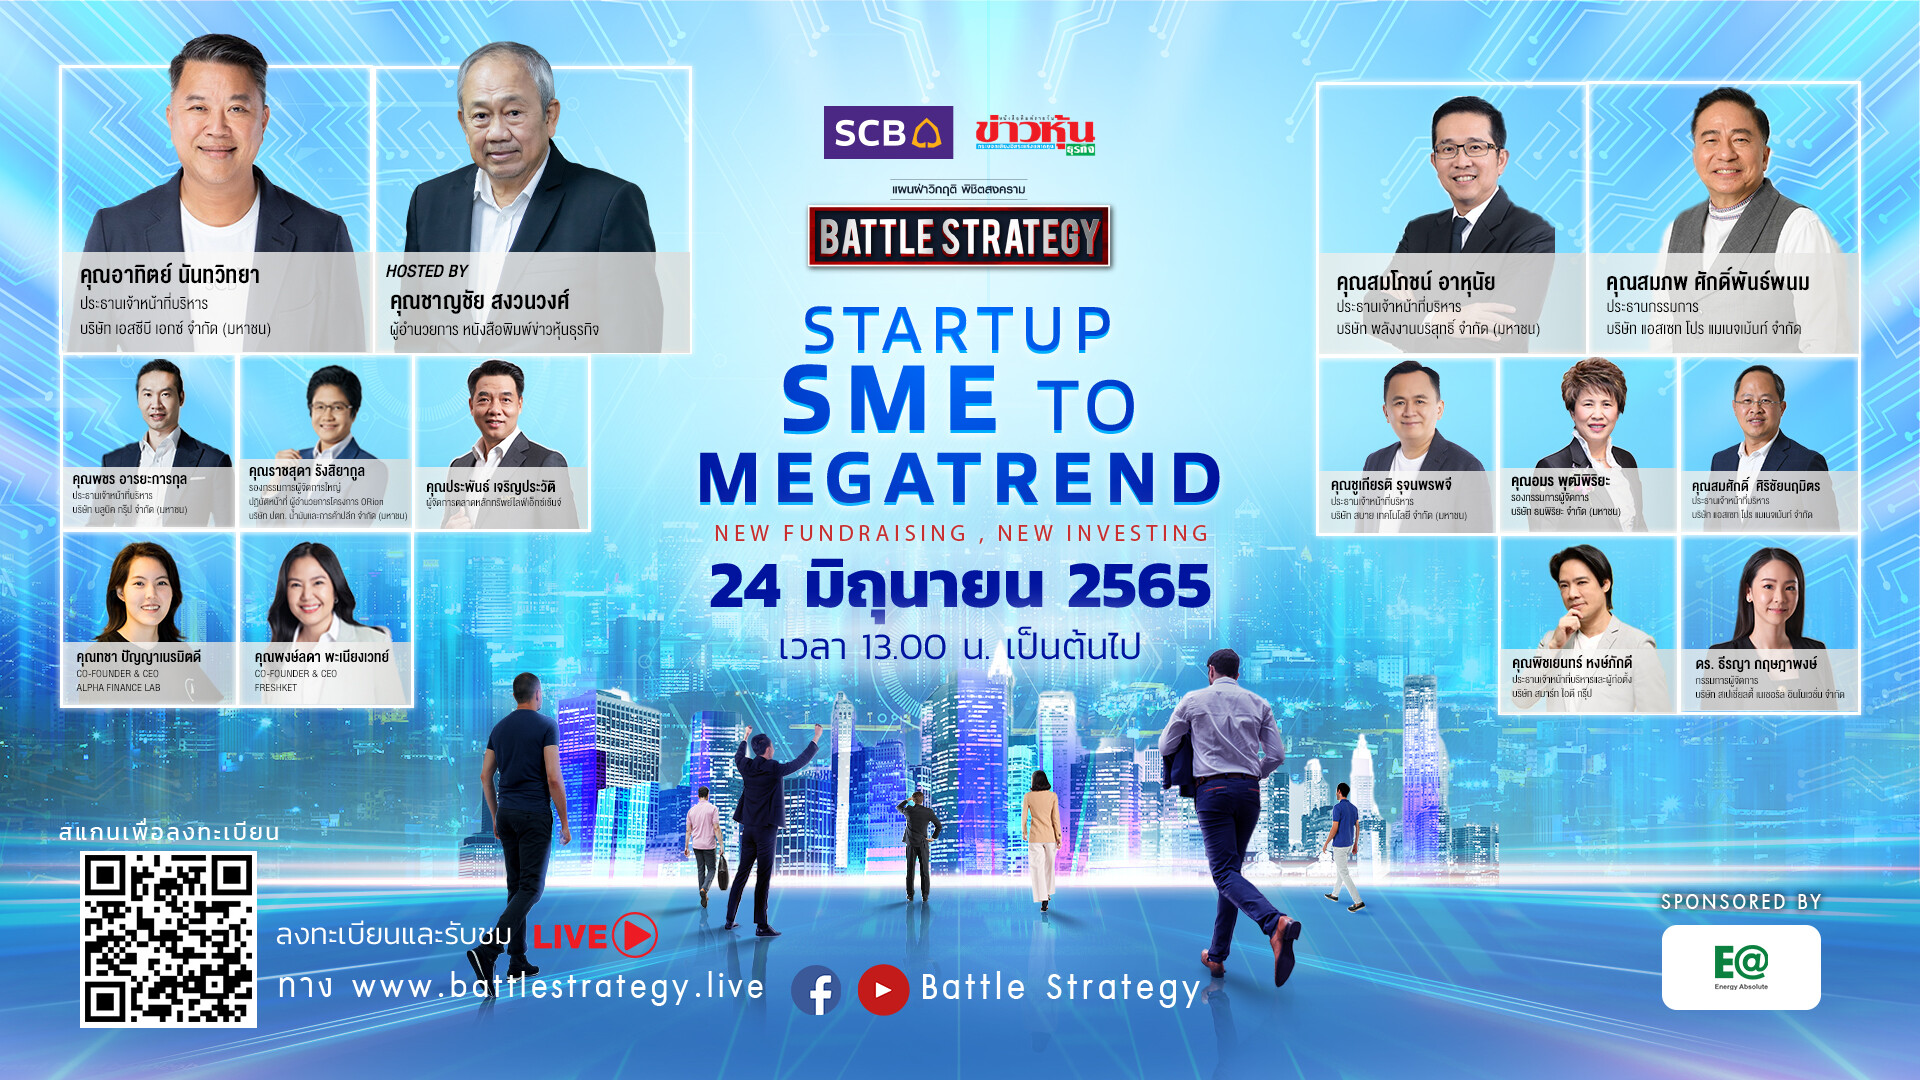 สัมมนาออนไลน์ Battle Strategy แผนฝ่าวิกฤติ พิชิตสงคราม  EPISODE IV: STARTUP SME TO MEGATREND